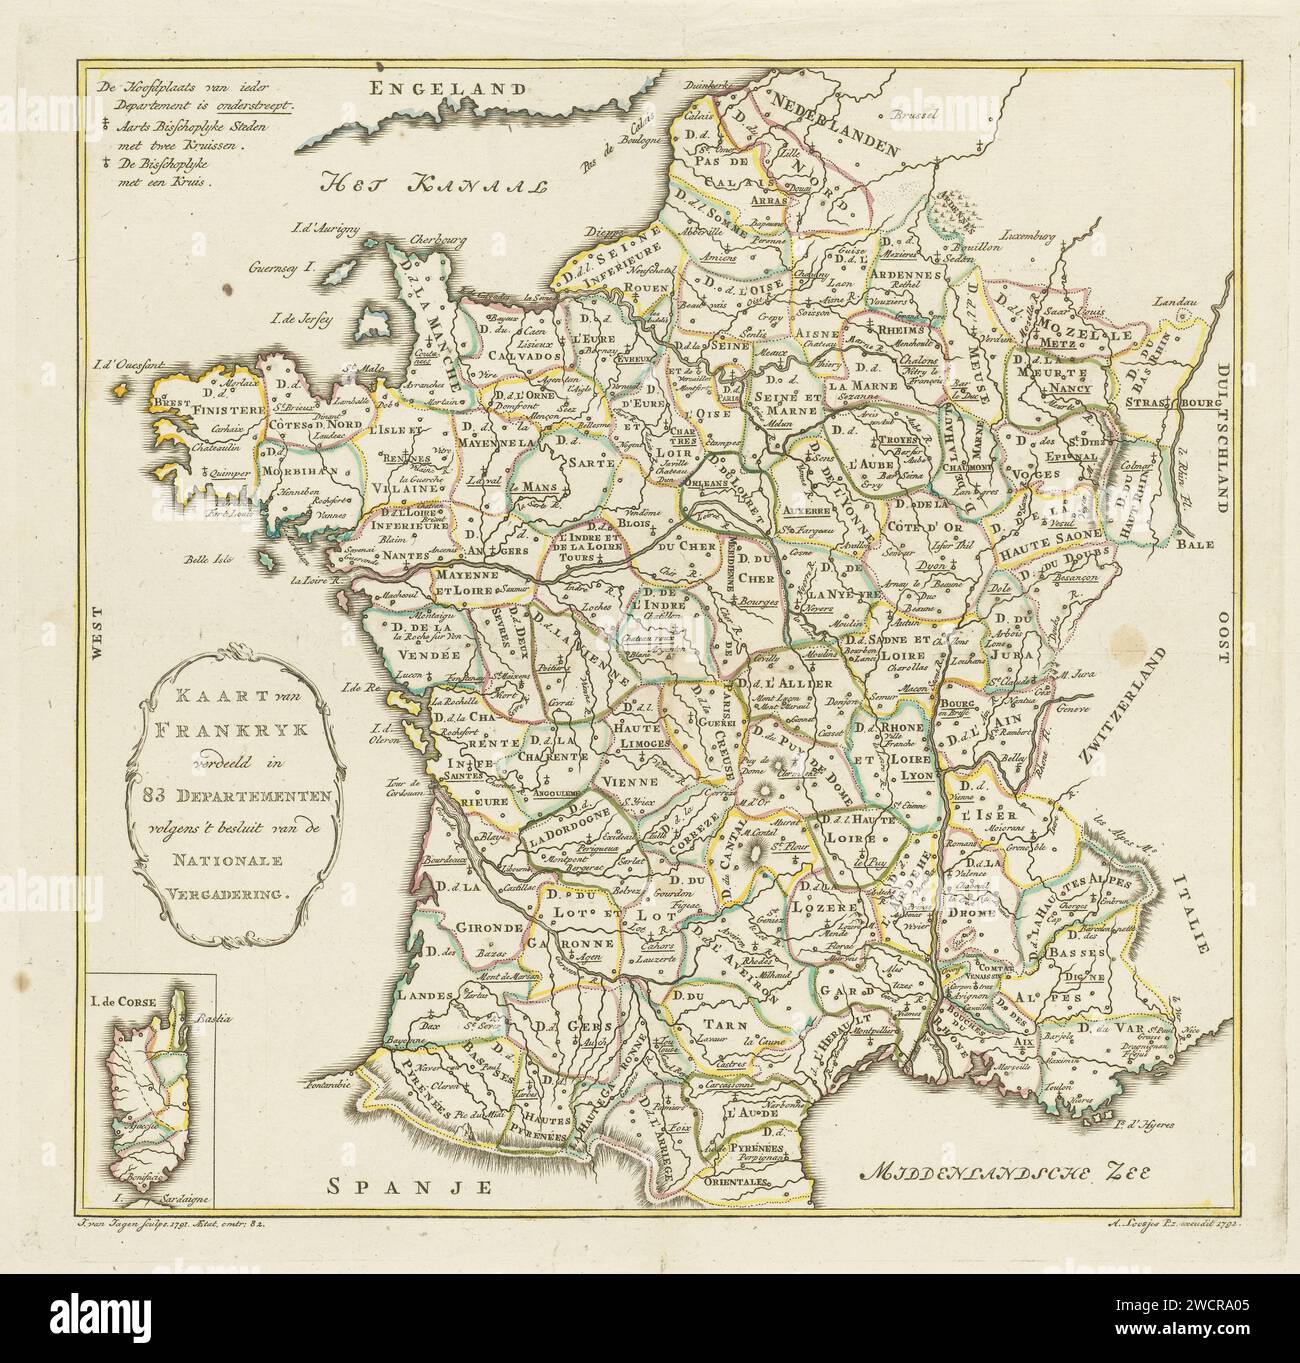 Carte de France, Jan van Jagen, 1792 imprimer carte de France et de Corse où les départements individuels sont encadrés avec de l'encre jaune, verte, rose et bleue. Cartes de gravure / gravure sur papier Amsterdam de pays ou de régions distincts Banque D'Images